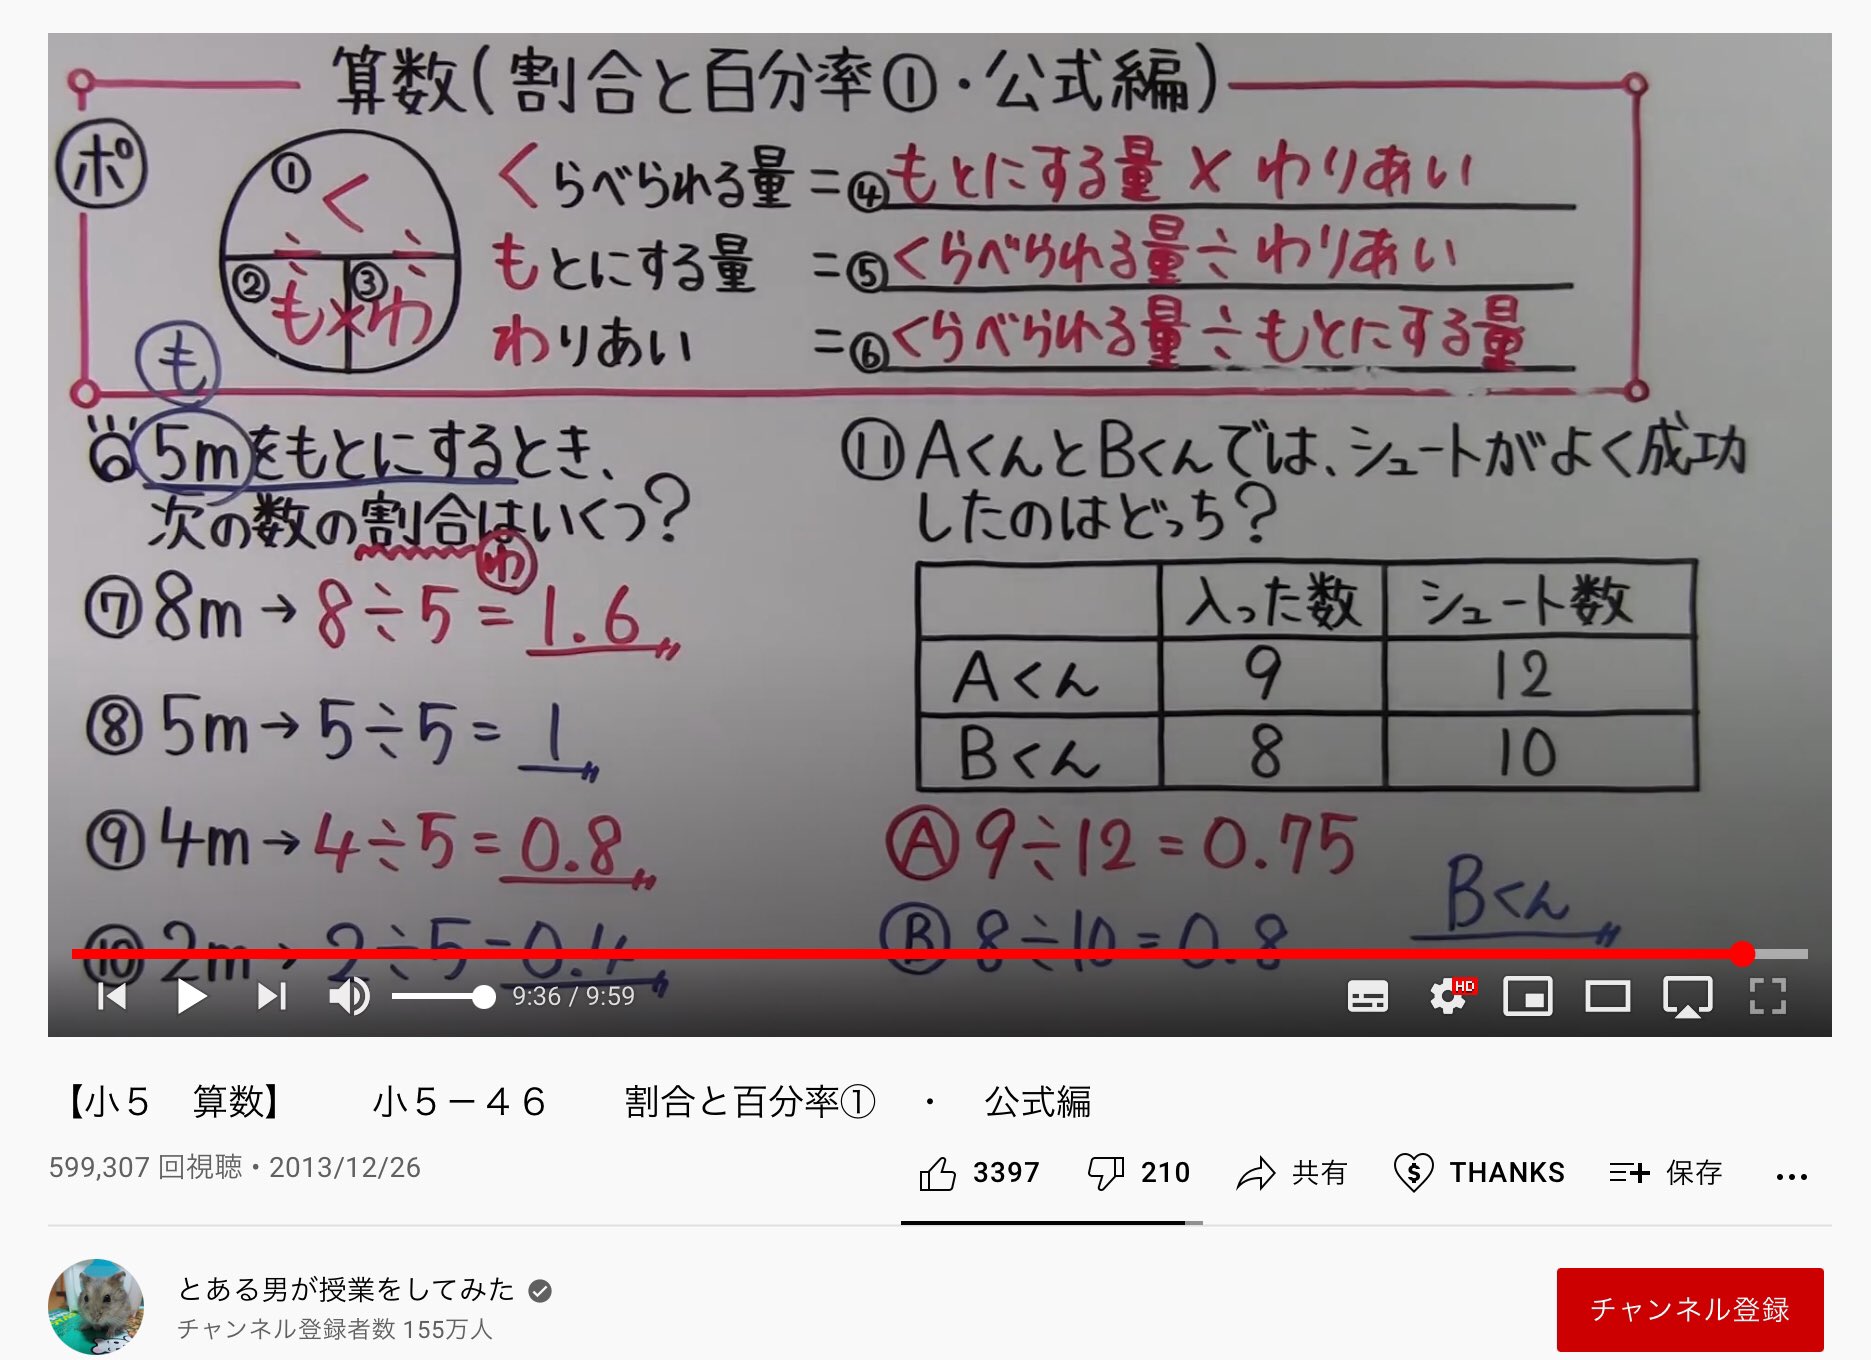 黒木玄 Gen Kuroki ただし 算数や数学についての動画を批判する場合には 算数や数学では書き間違いや計算ミスは許される を徹底することが必要です 書き間違いや計算ミスの類は大した問題ではない それに対して 3つに公式を頼って割合について教え